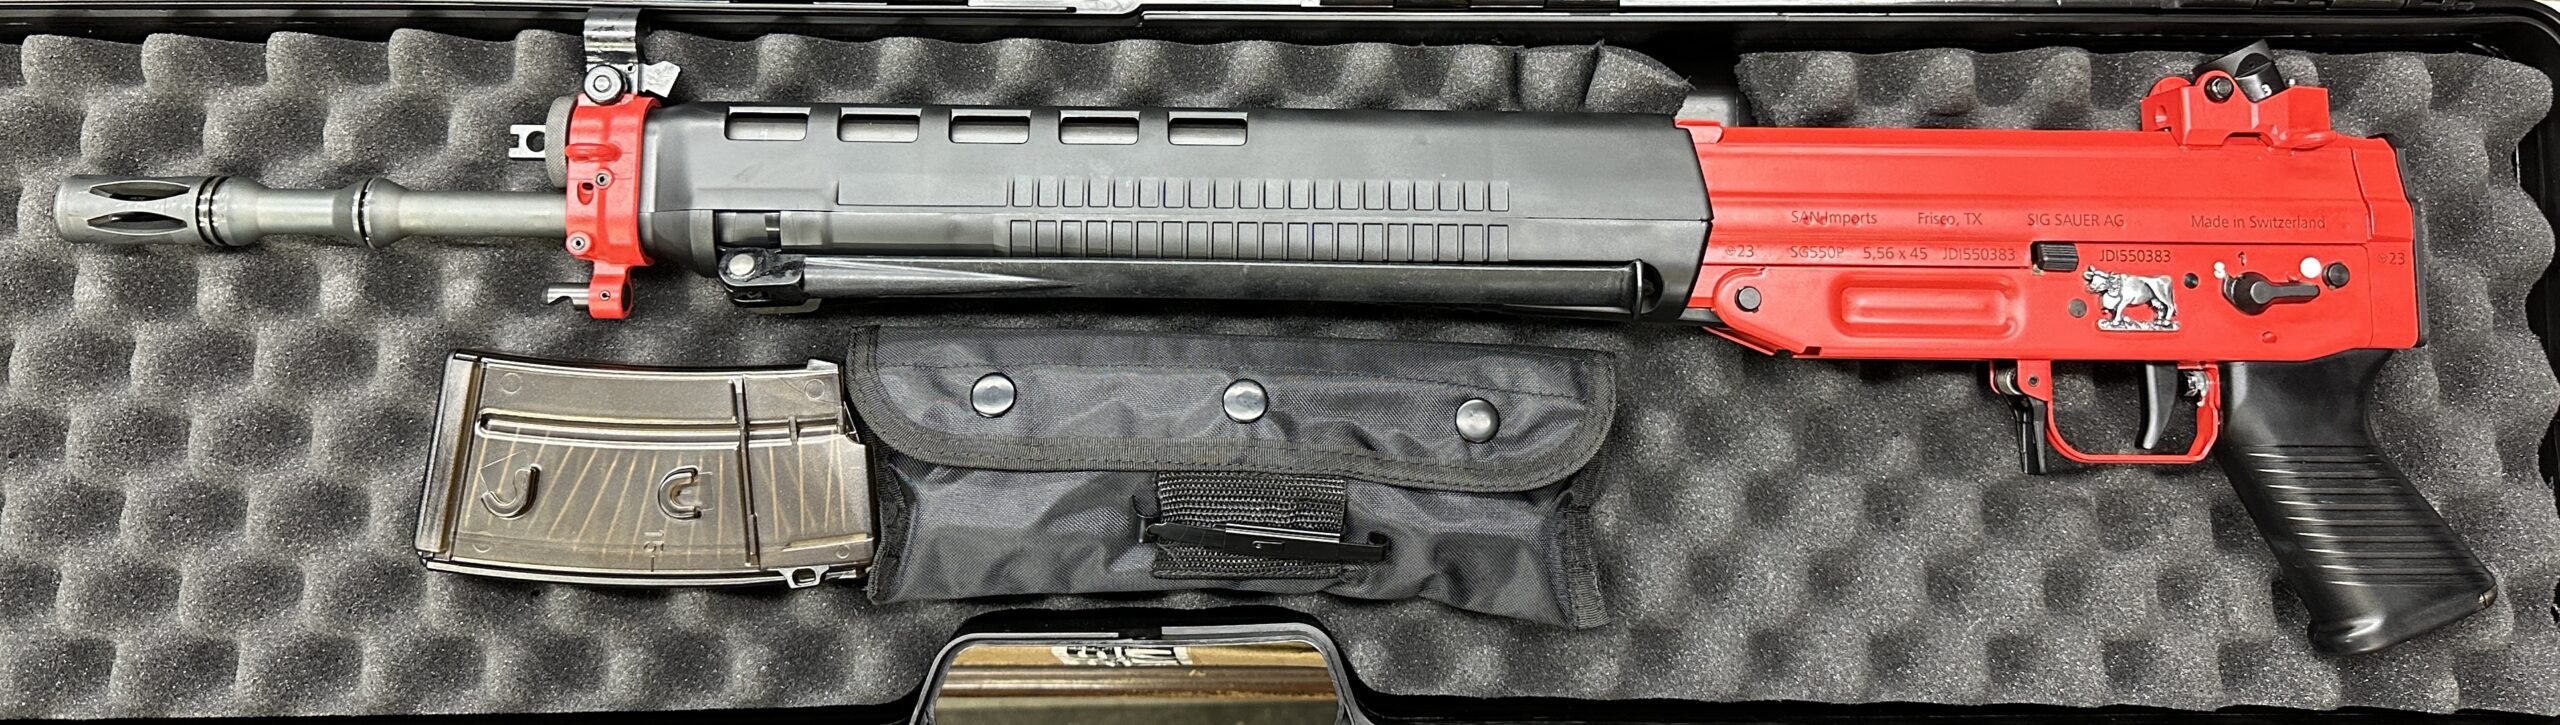 550/PE90 Edelweiss – JDI Firearms